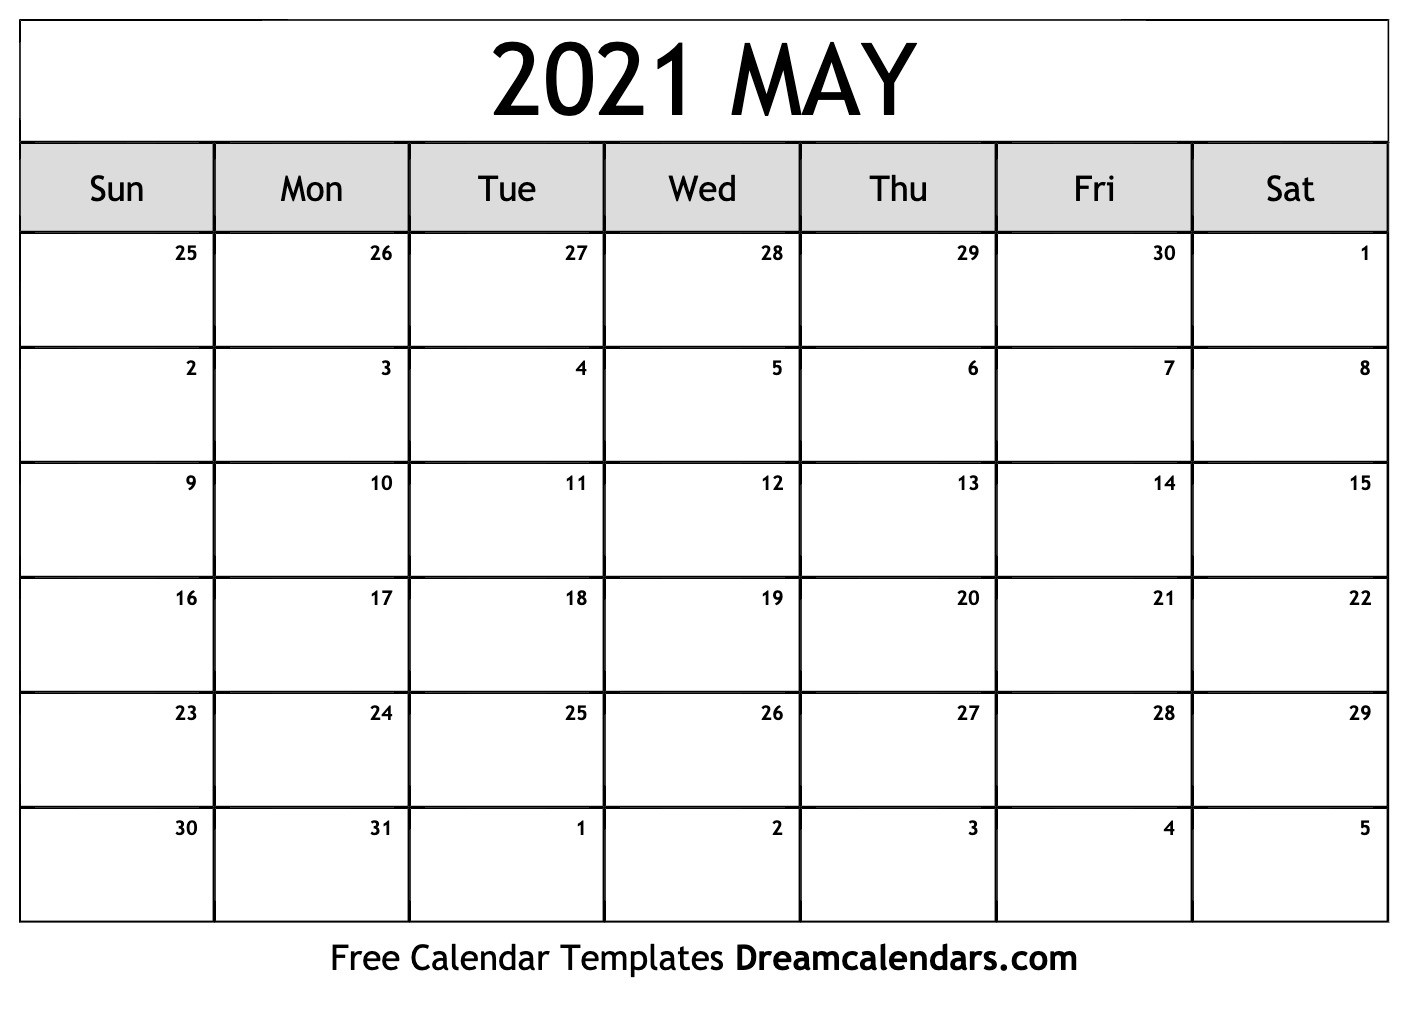 Календарь февраль 2024 беларусь